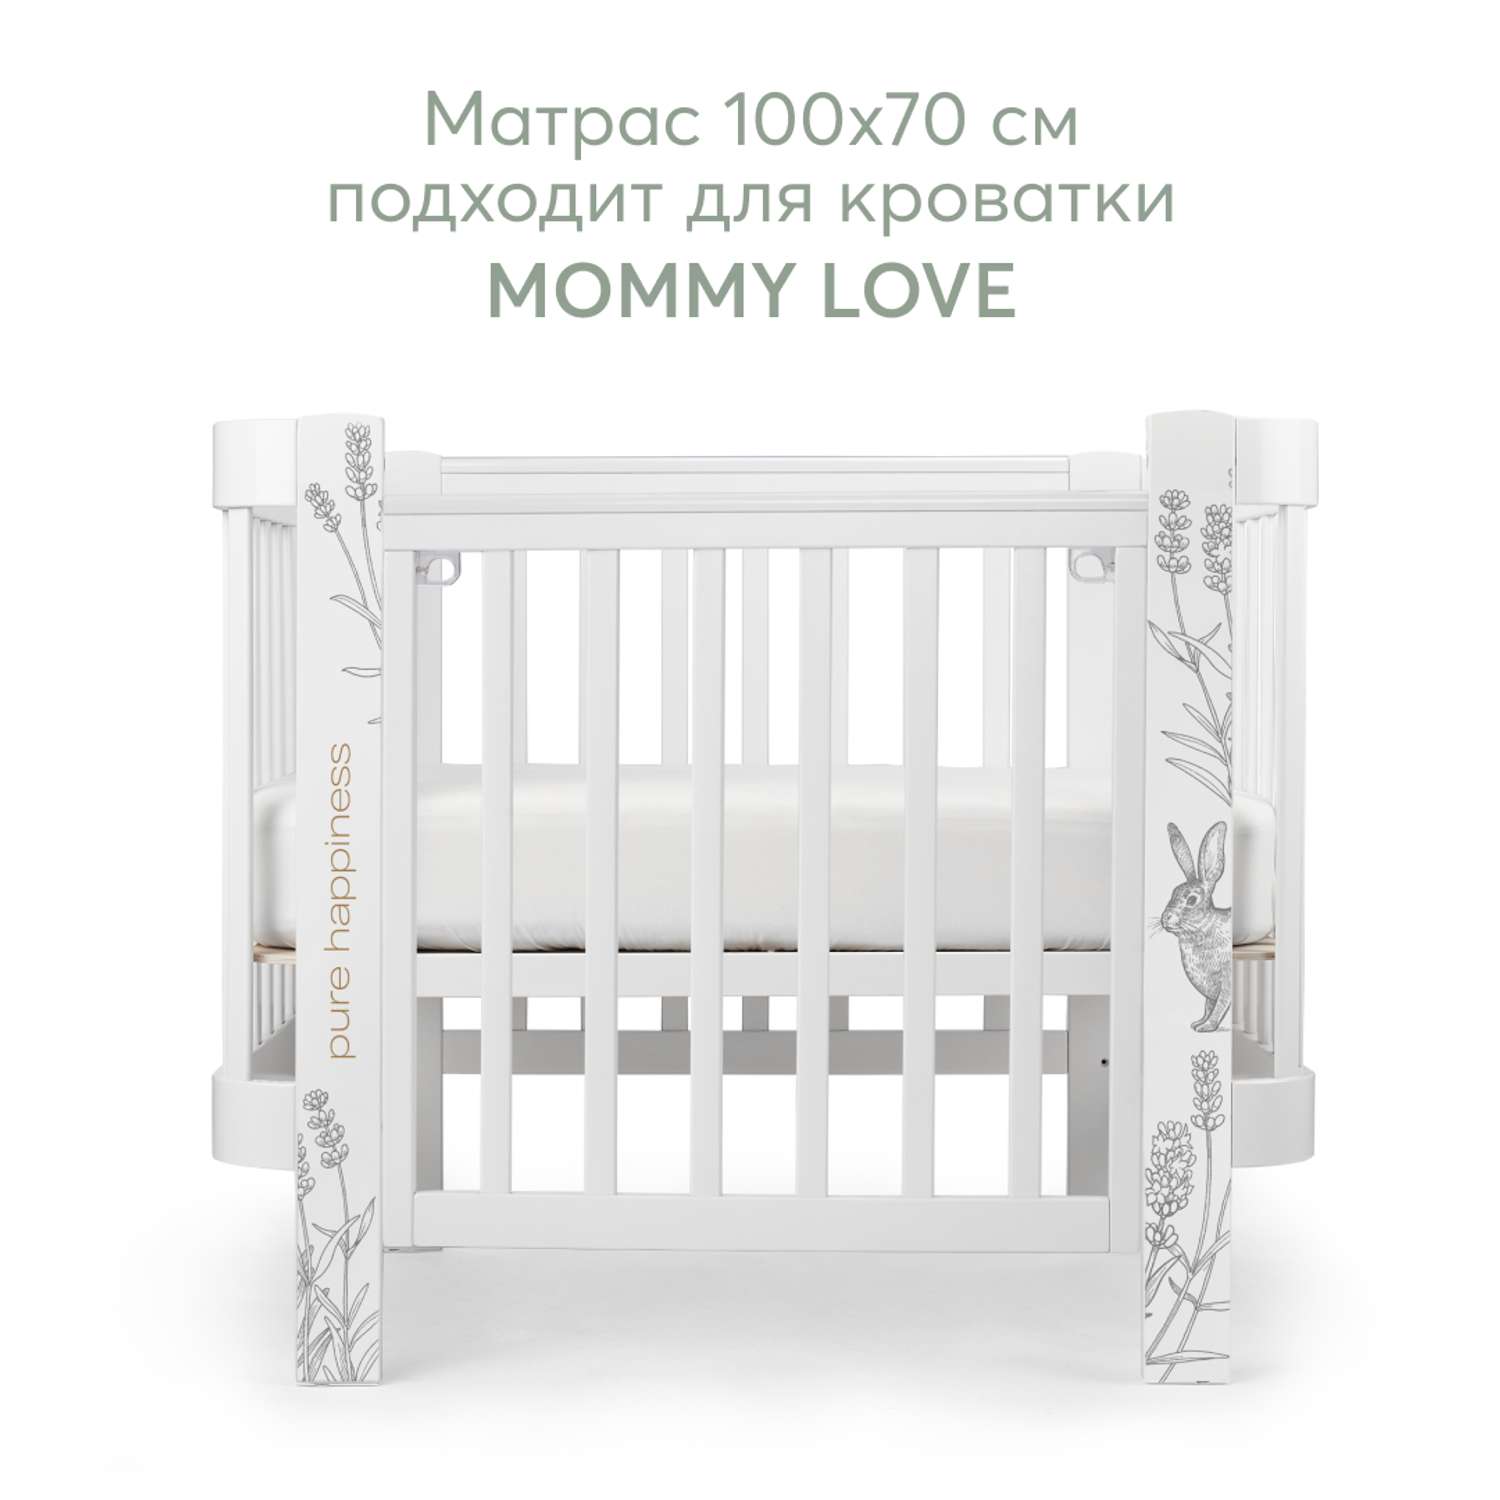 Матрас двусторонний 100х70 Happy Baby гипоаллергенный для кровати MOMMY LOVE - фото 2